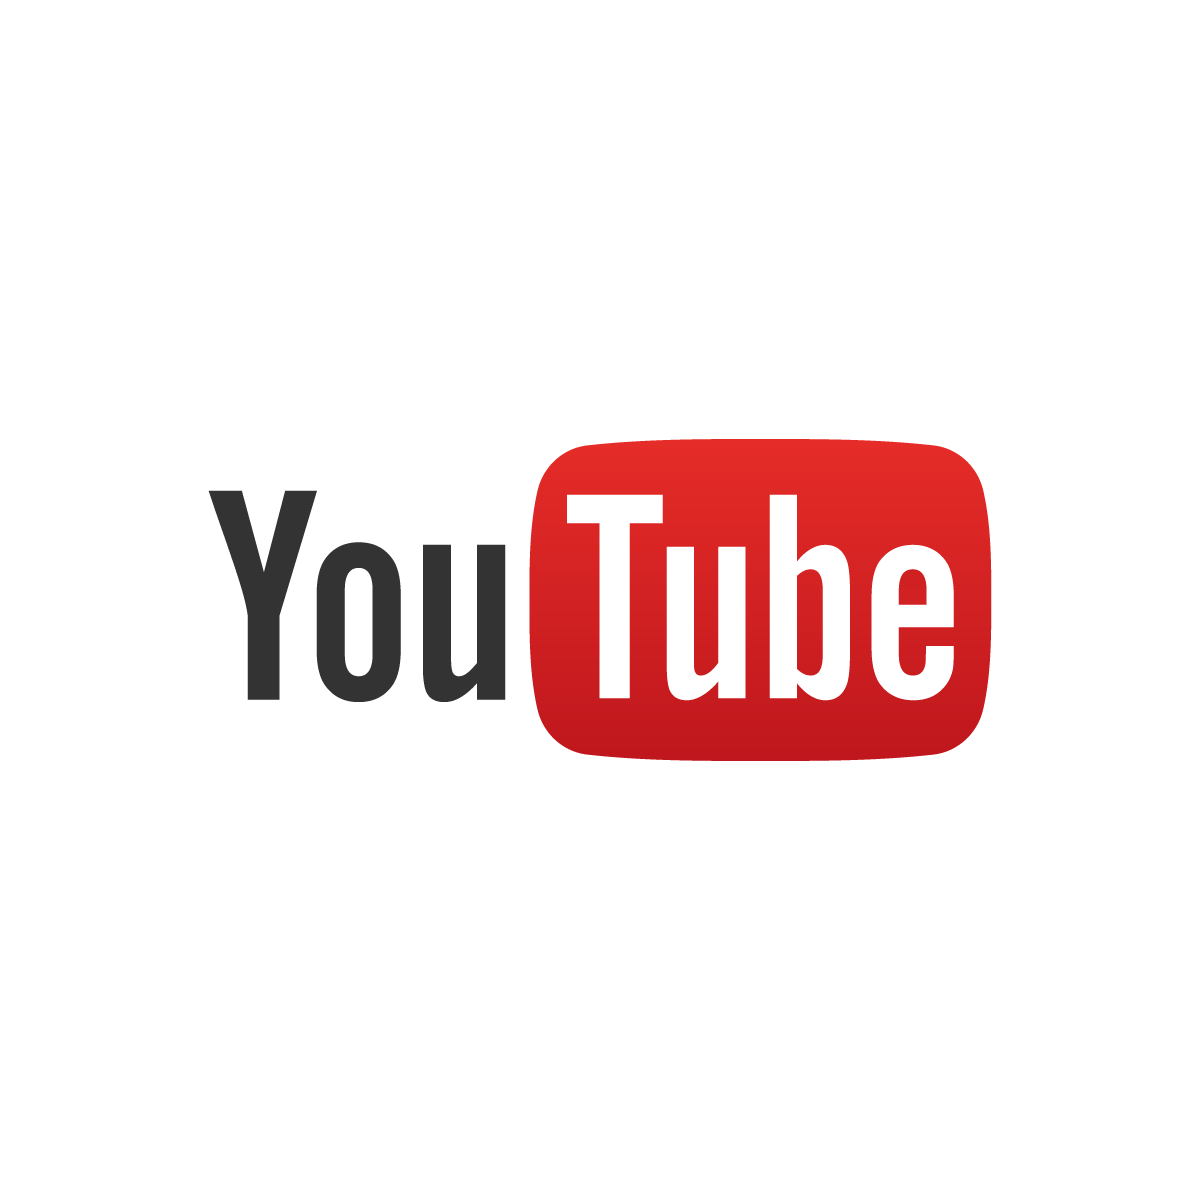 YouTube catat 2.7 bilion pengguna aktif pada ulang tahun ke-19